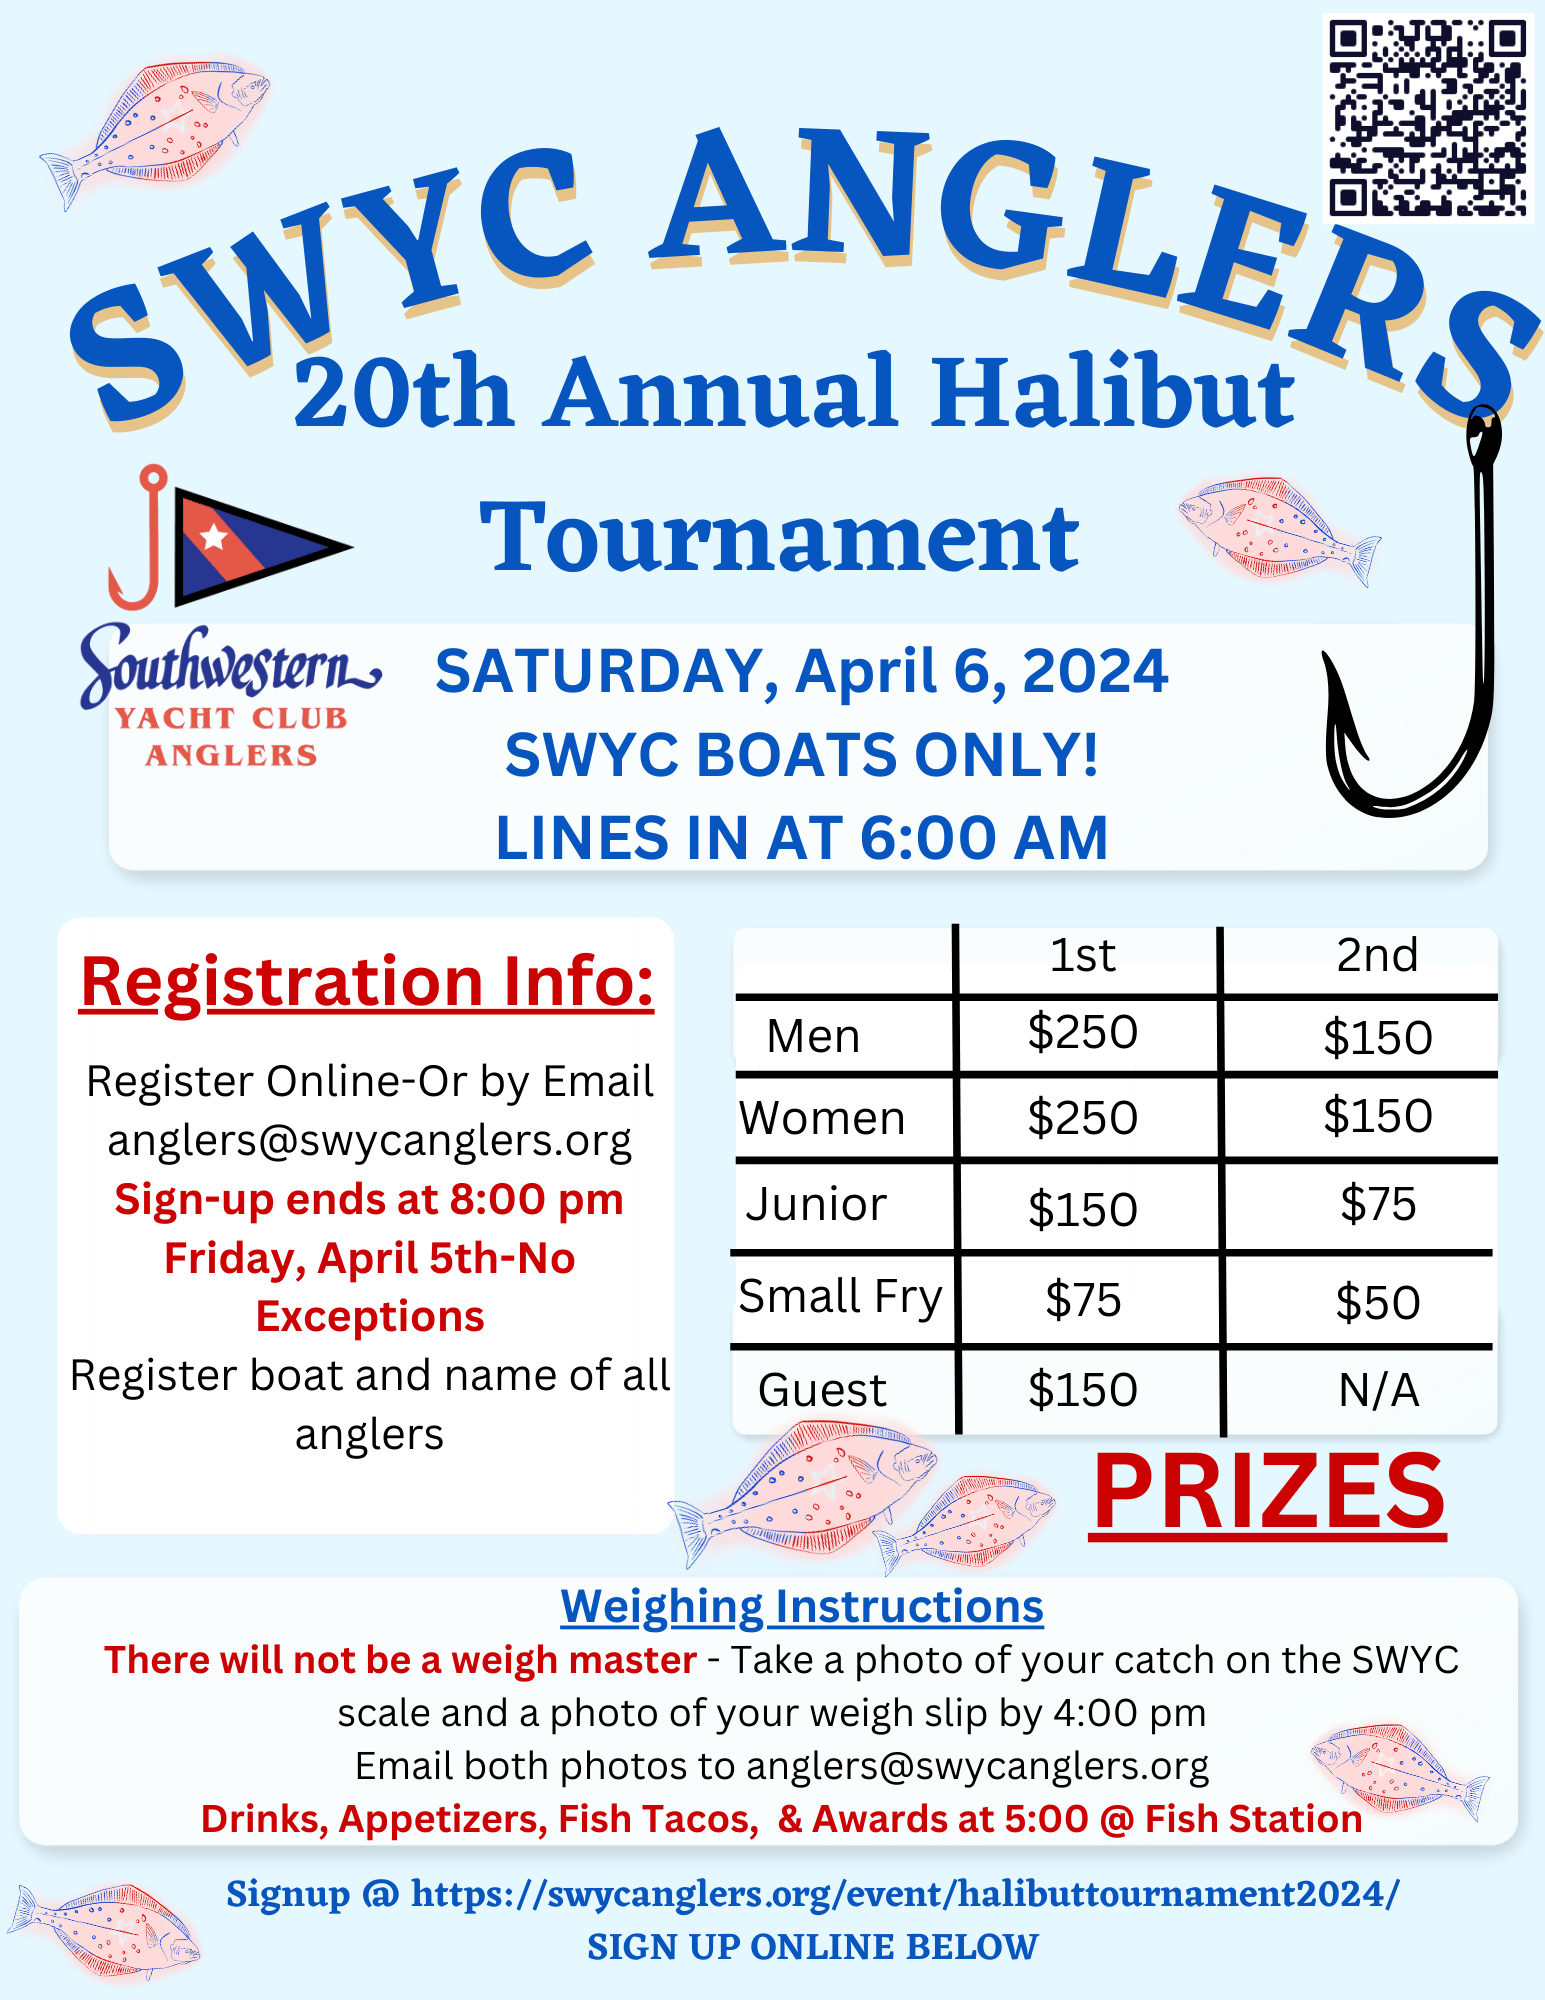 southwestern yacht club events